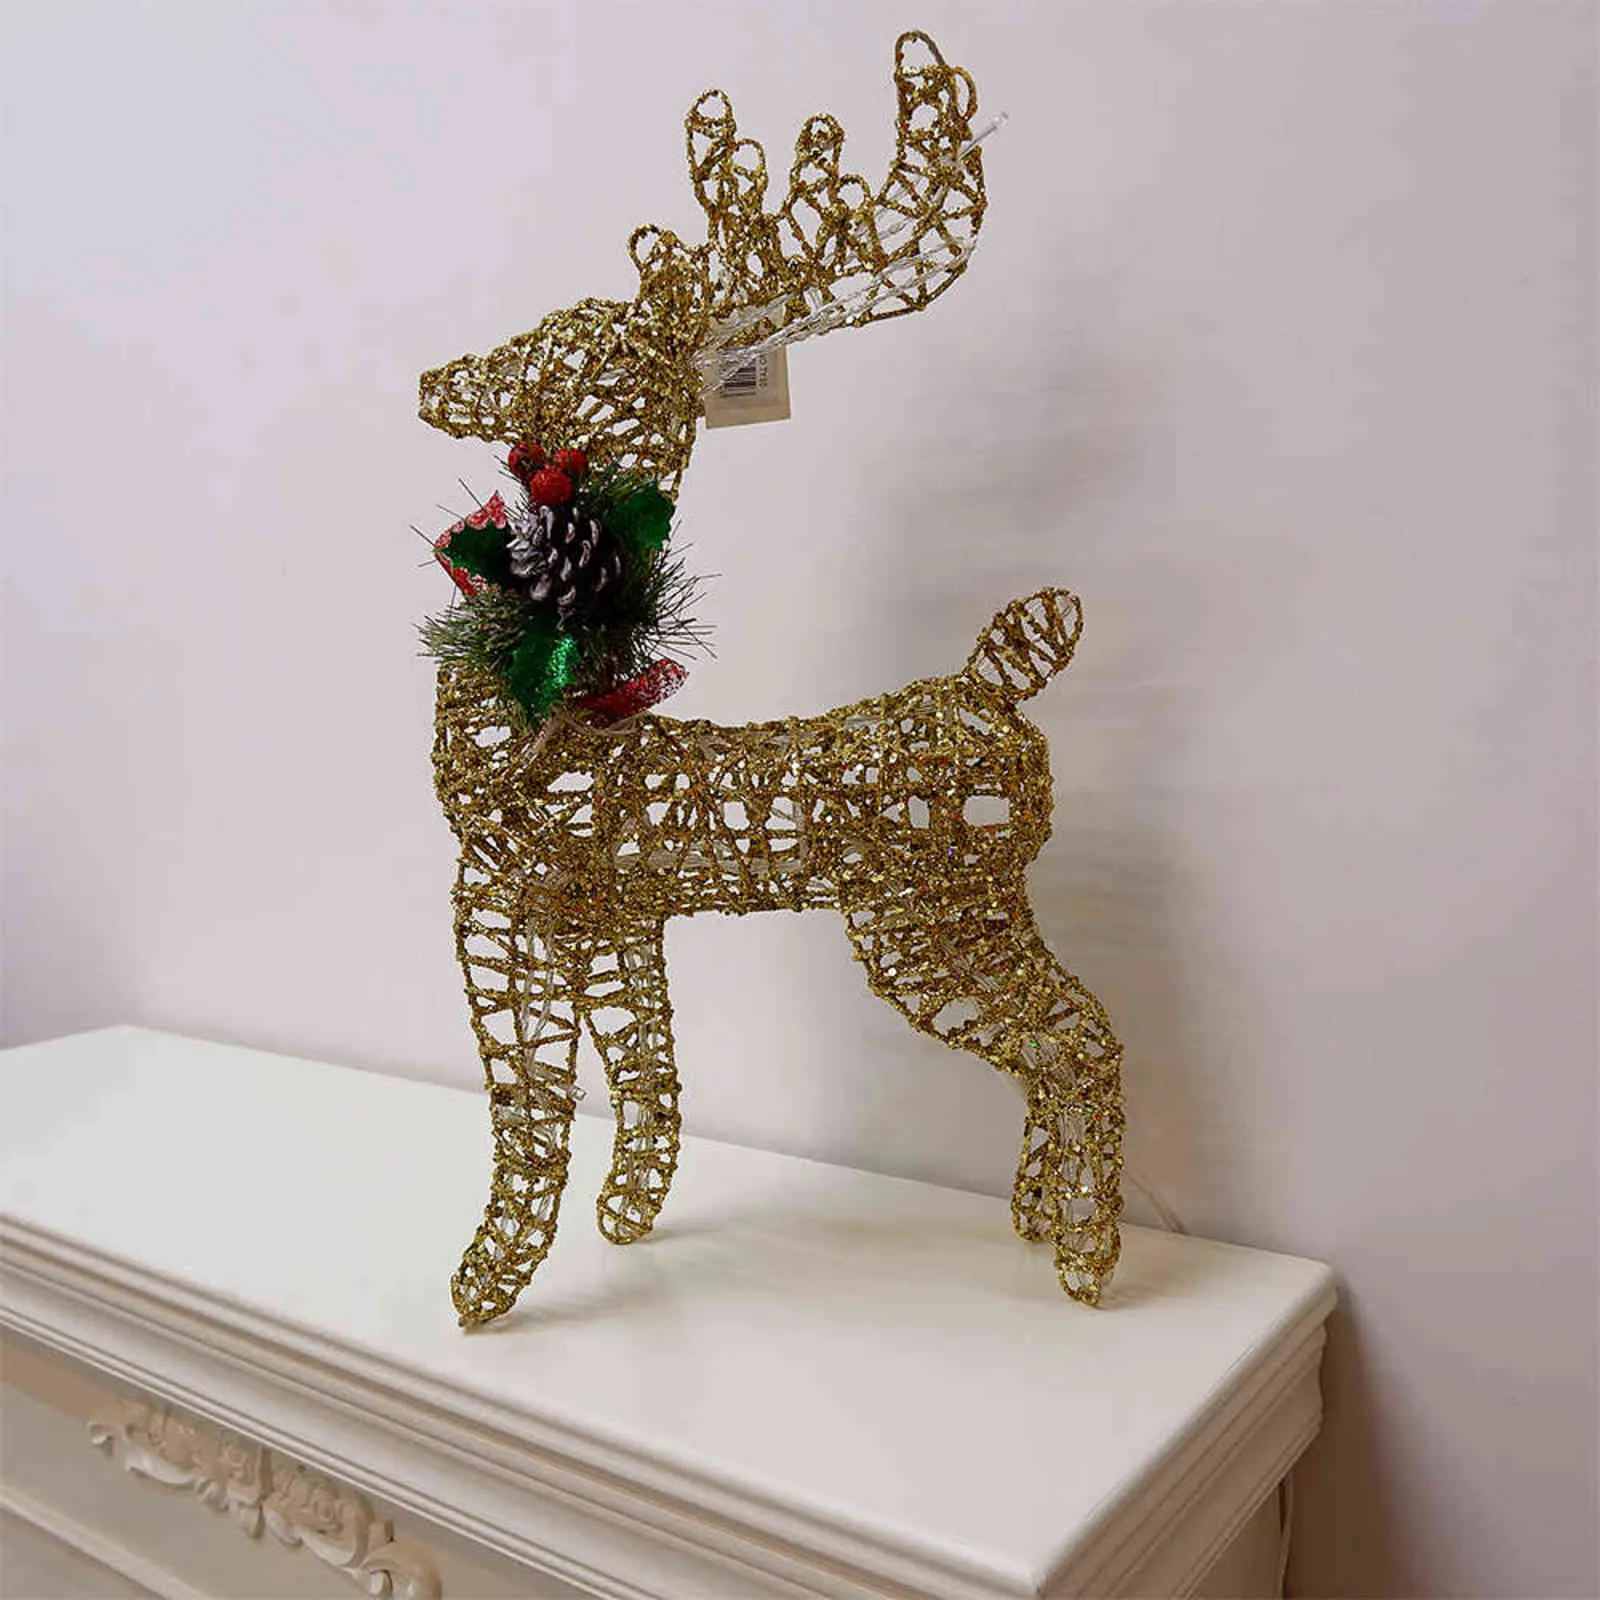 30 40 50 cmクリスマスの装飾装飾品ゴールドディアエルクLEDライトクリスマスツリーシーンルームハウスナビダッド年のデコレーション211122